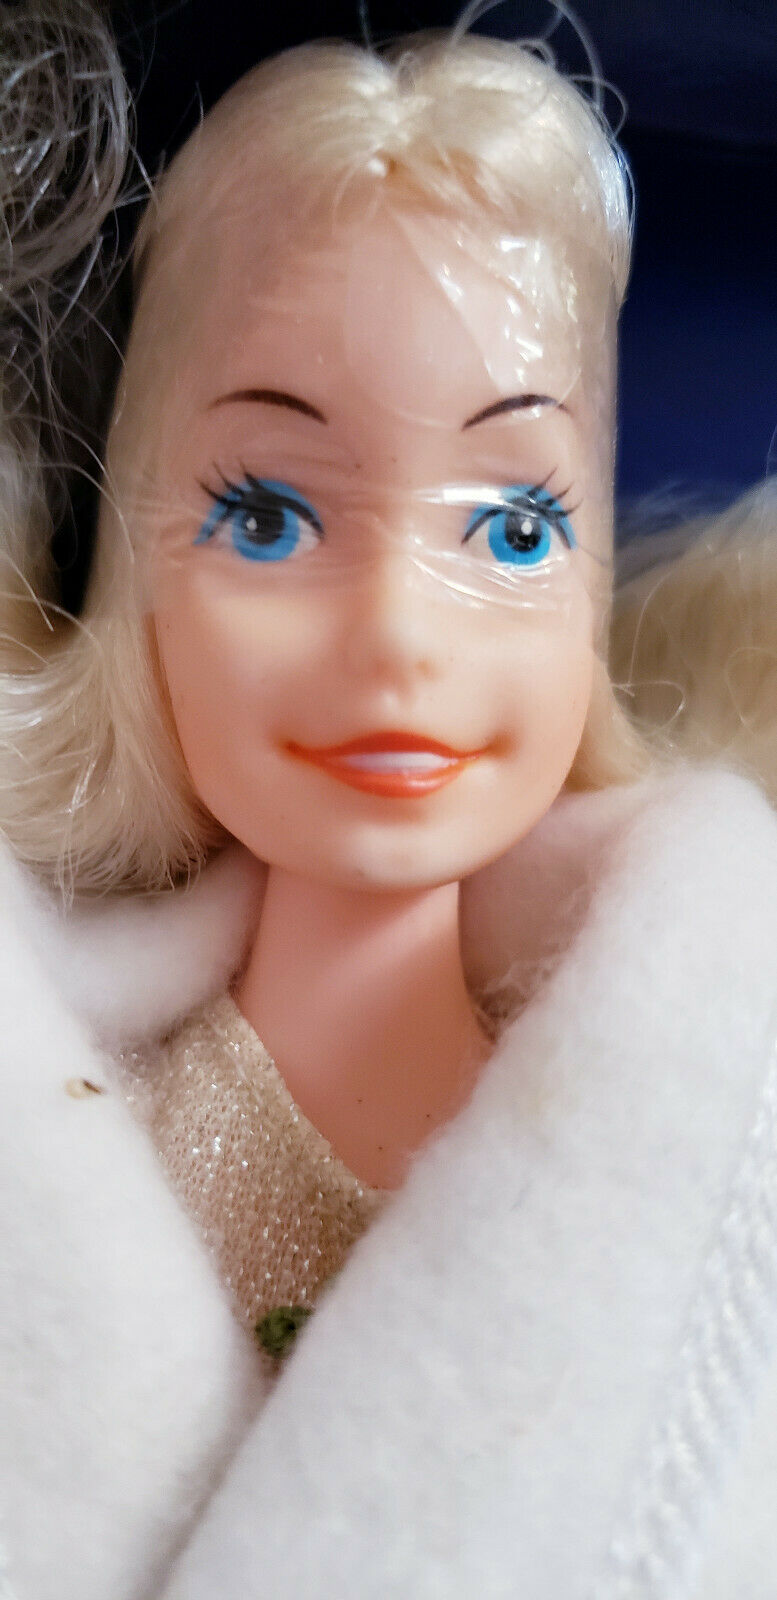 Eugene Barbie Clone Doll Mint In Bad Box! She Is Cute!